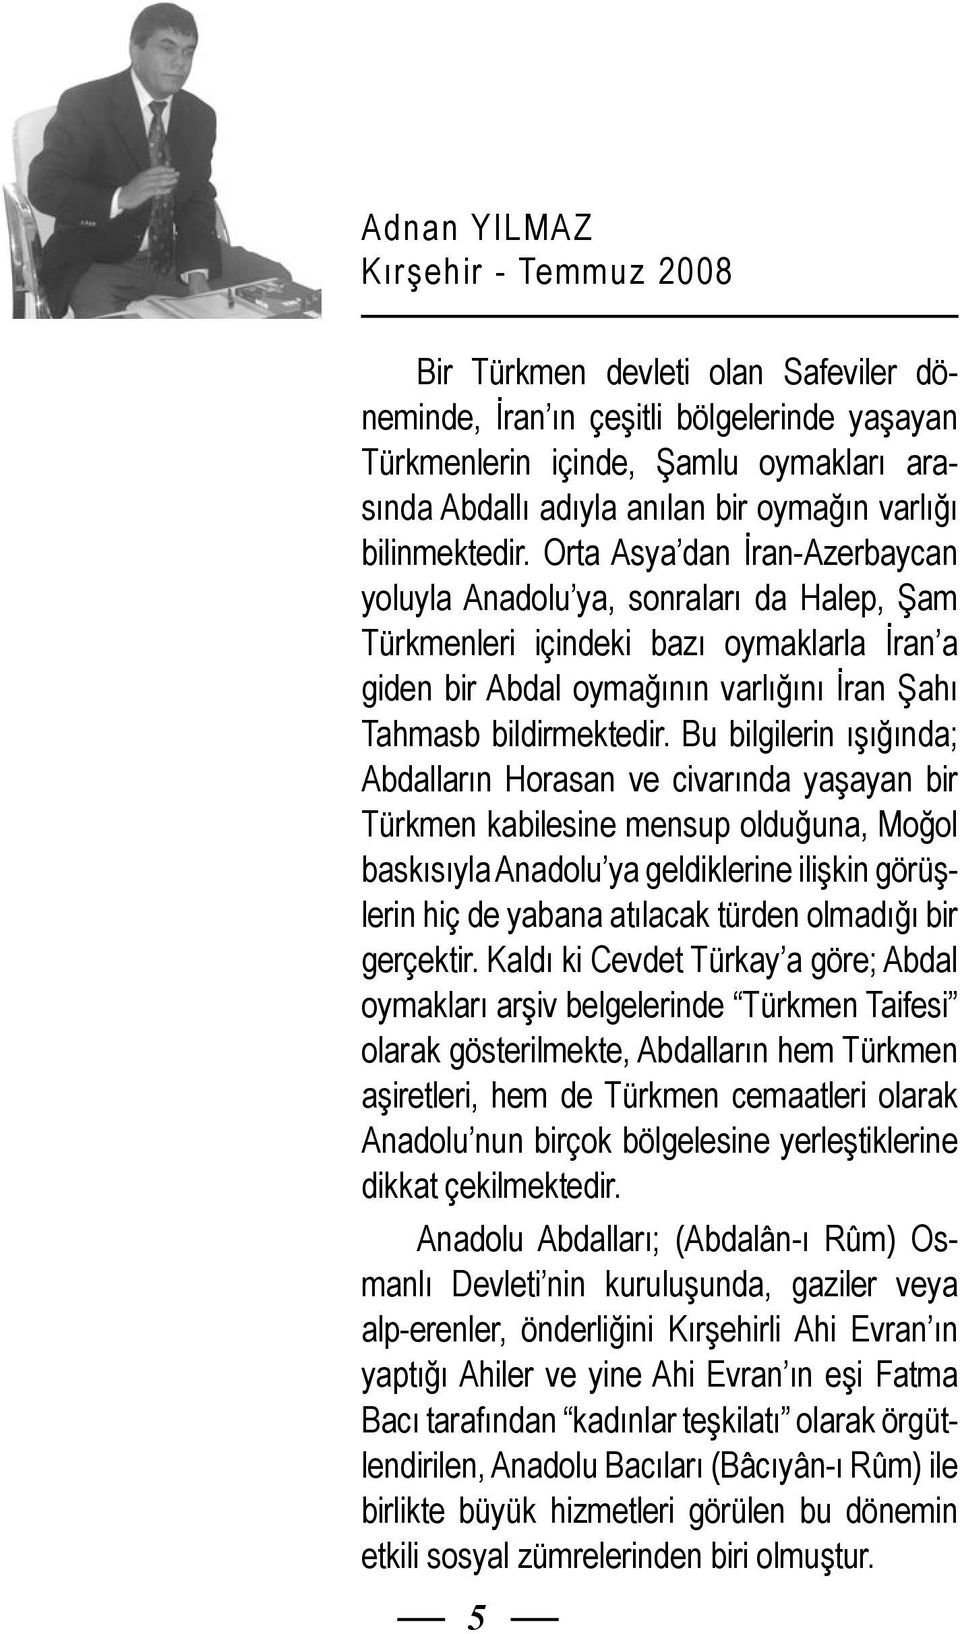 Orta Asya dan İran-Azerbaycan yoluyla Anadolu ya, sonraları da Halep, Şam Türkmenleri içindeki bazı oymaklarla İran a giden bir Abdal oymağının varlığını İran Şahı Tahmasb bildirmektedir.